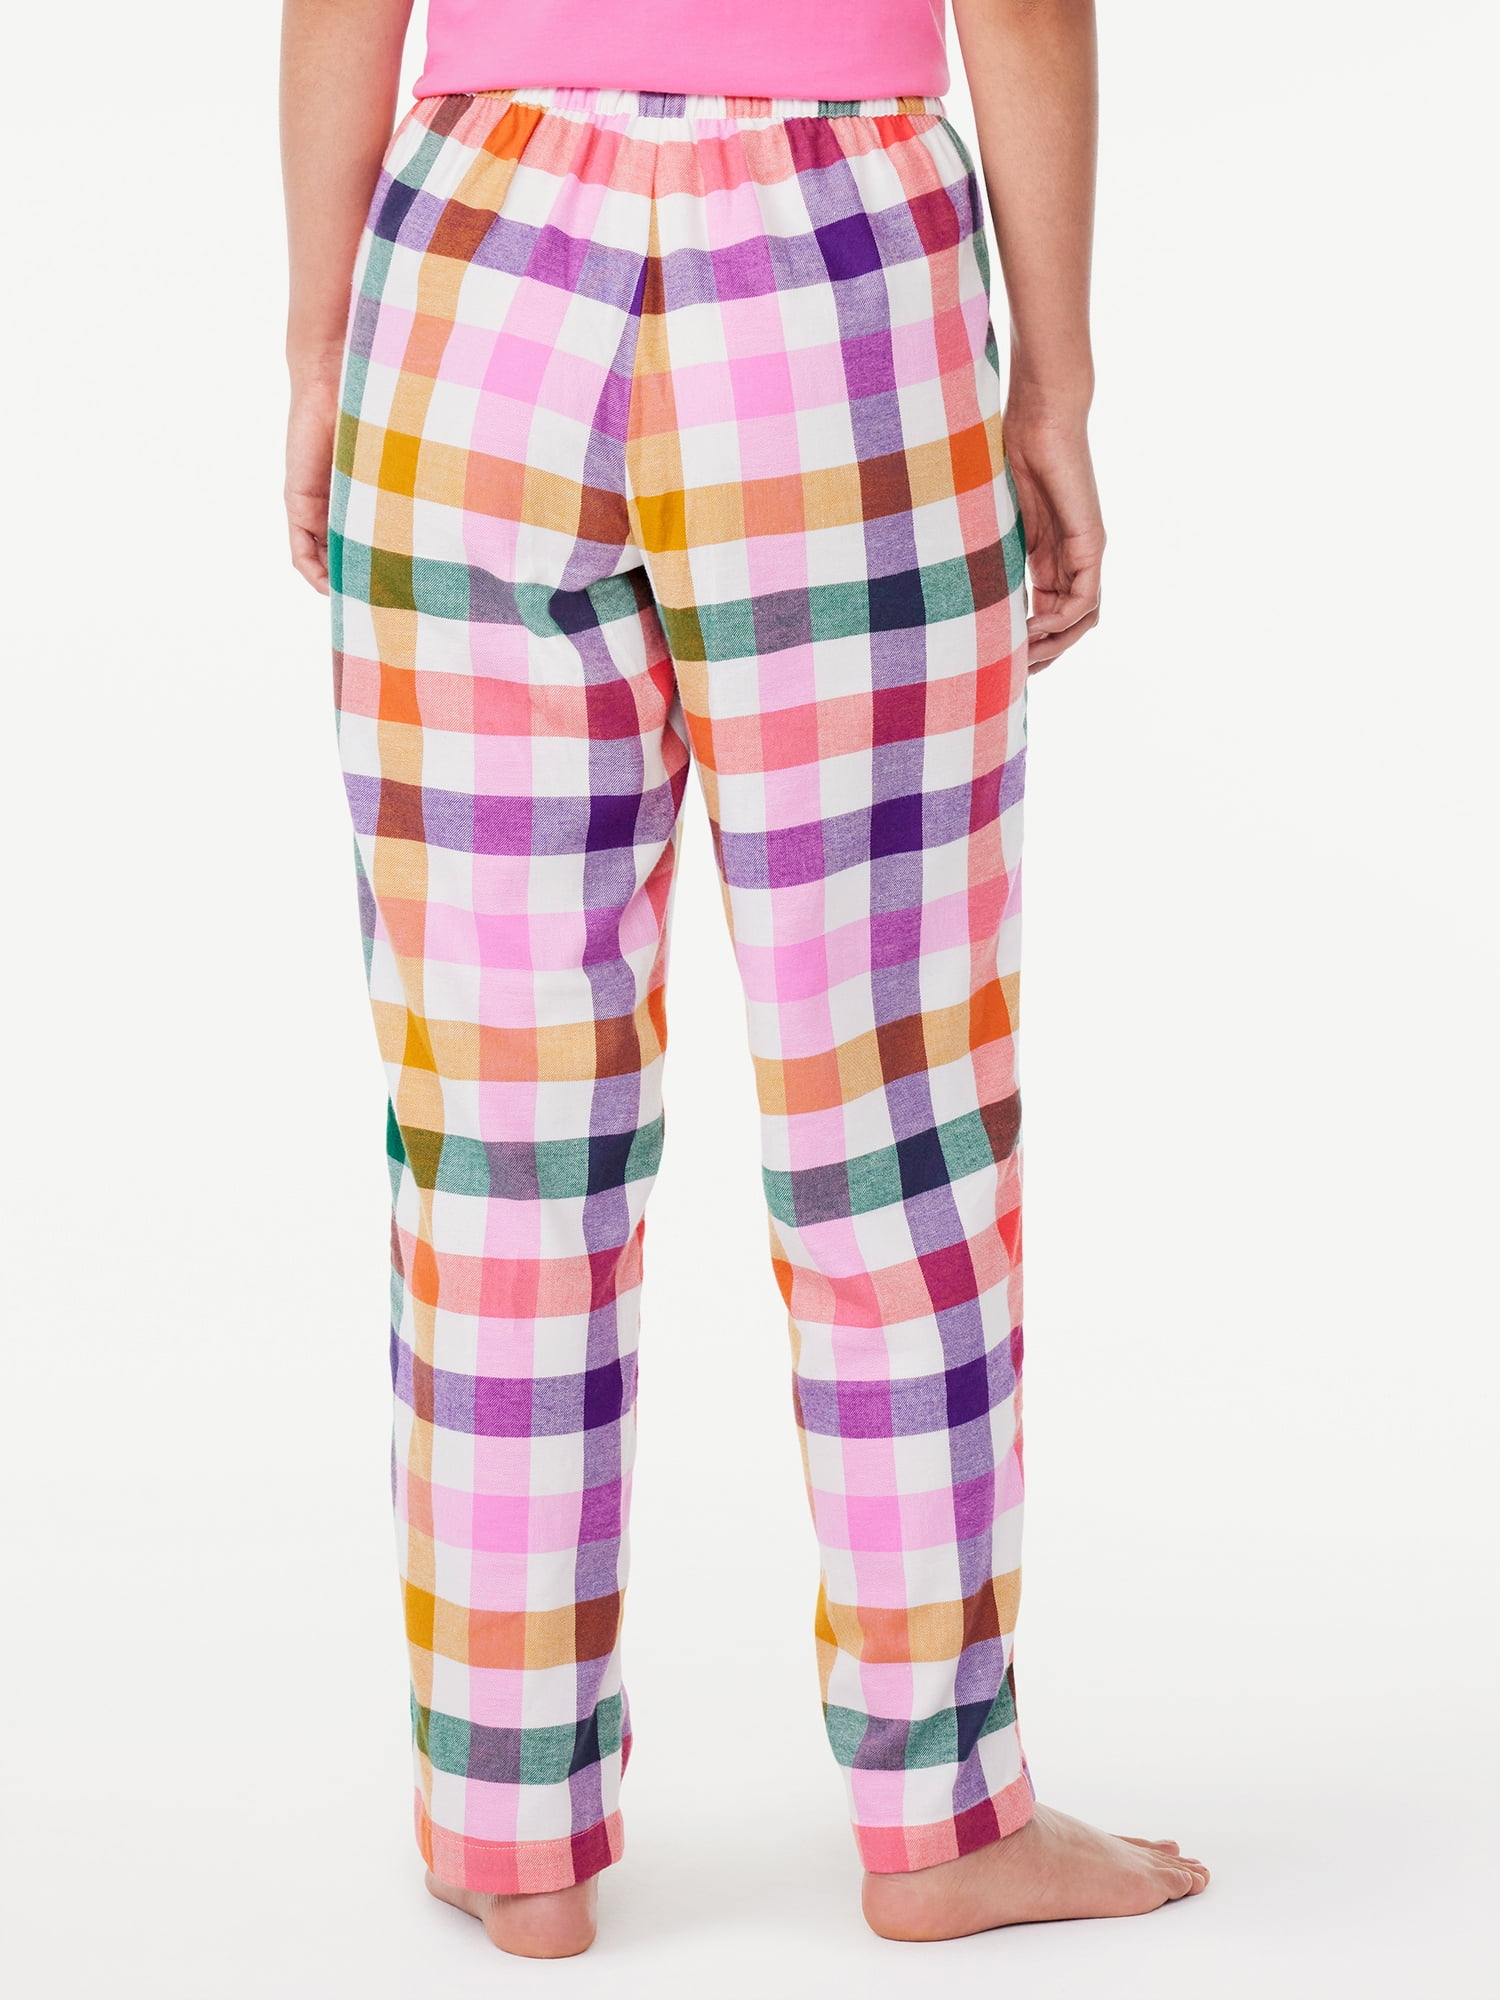 Buy Flannel Sleep Pants - Order Pajama Bottoms online 5000008572 - PINK US